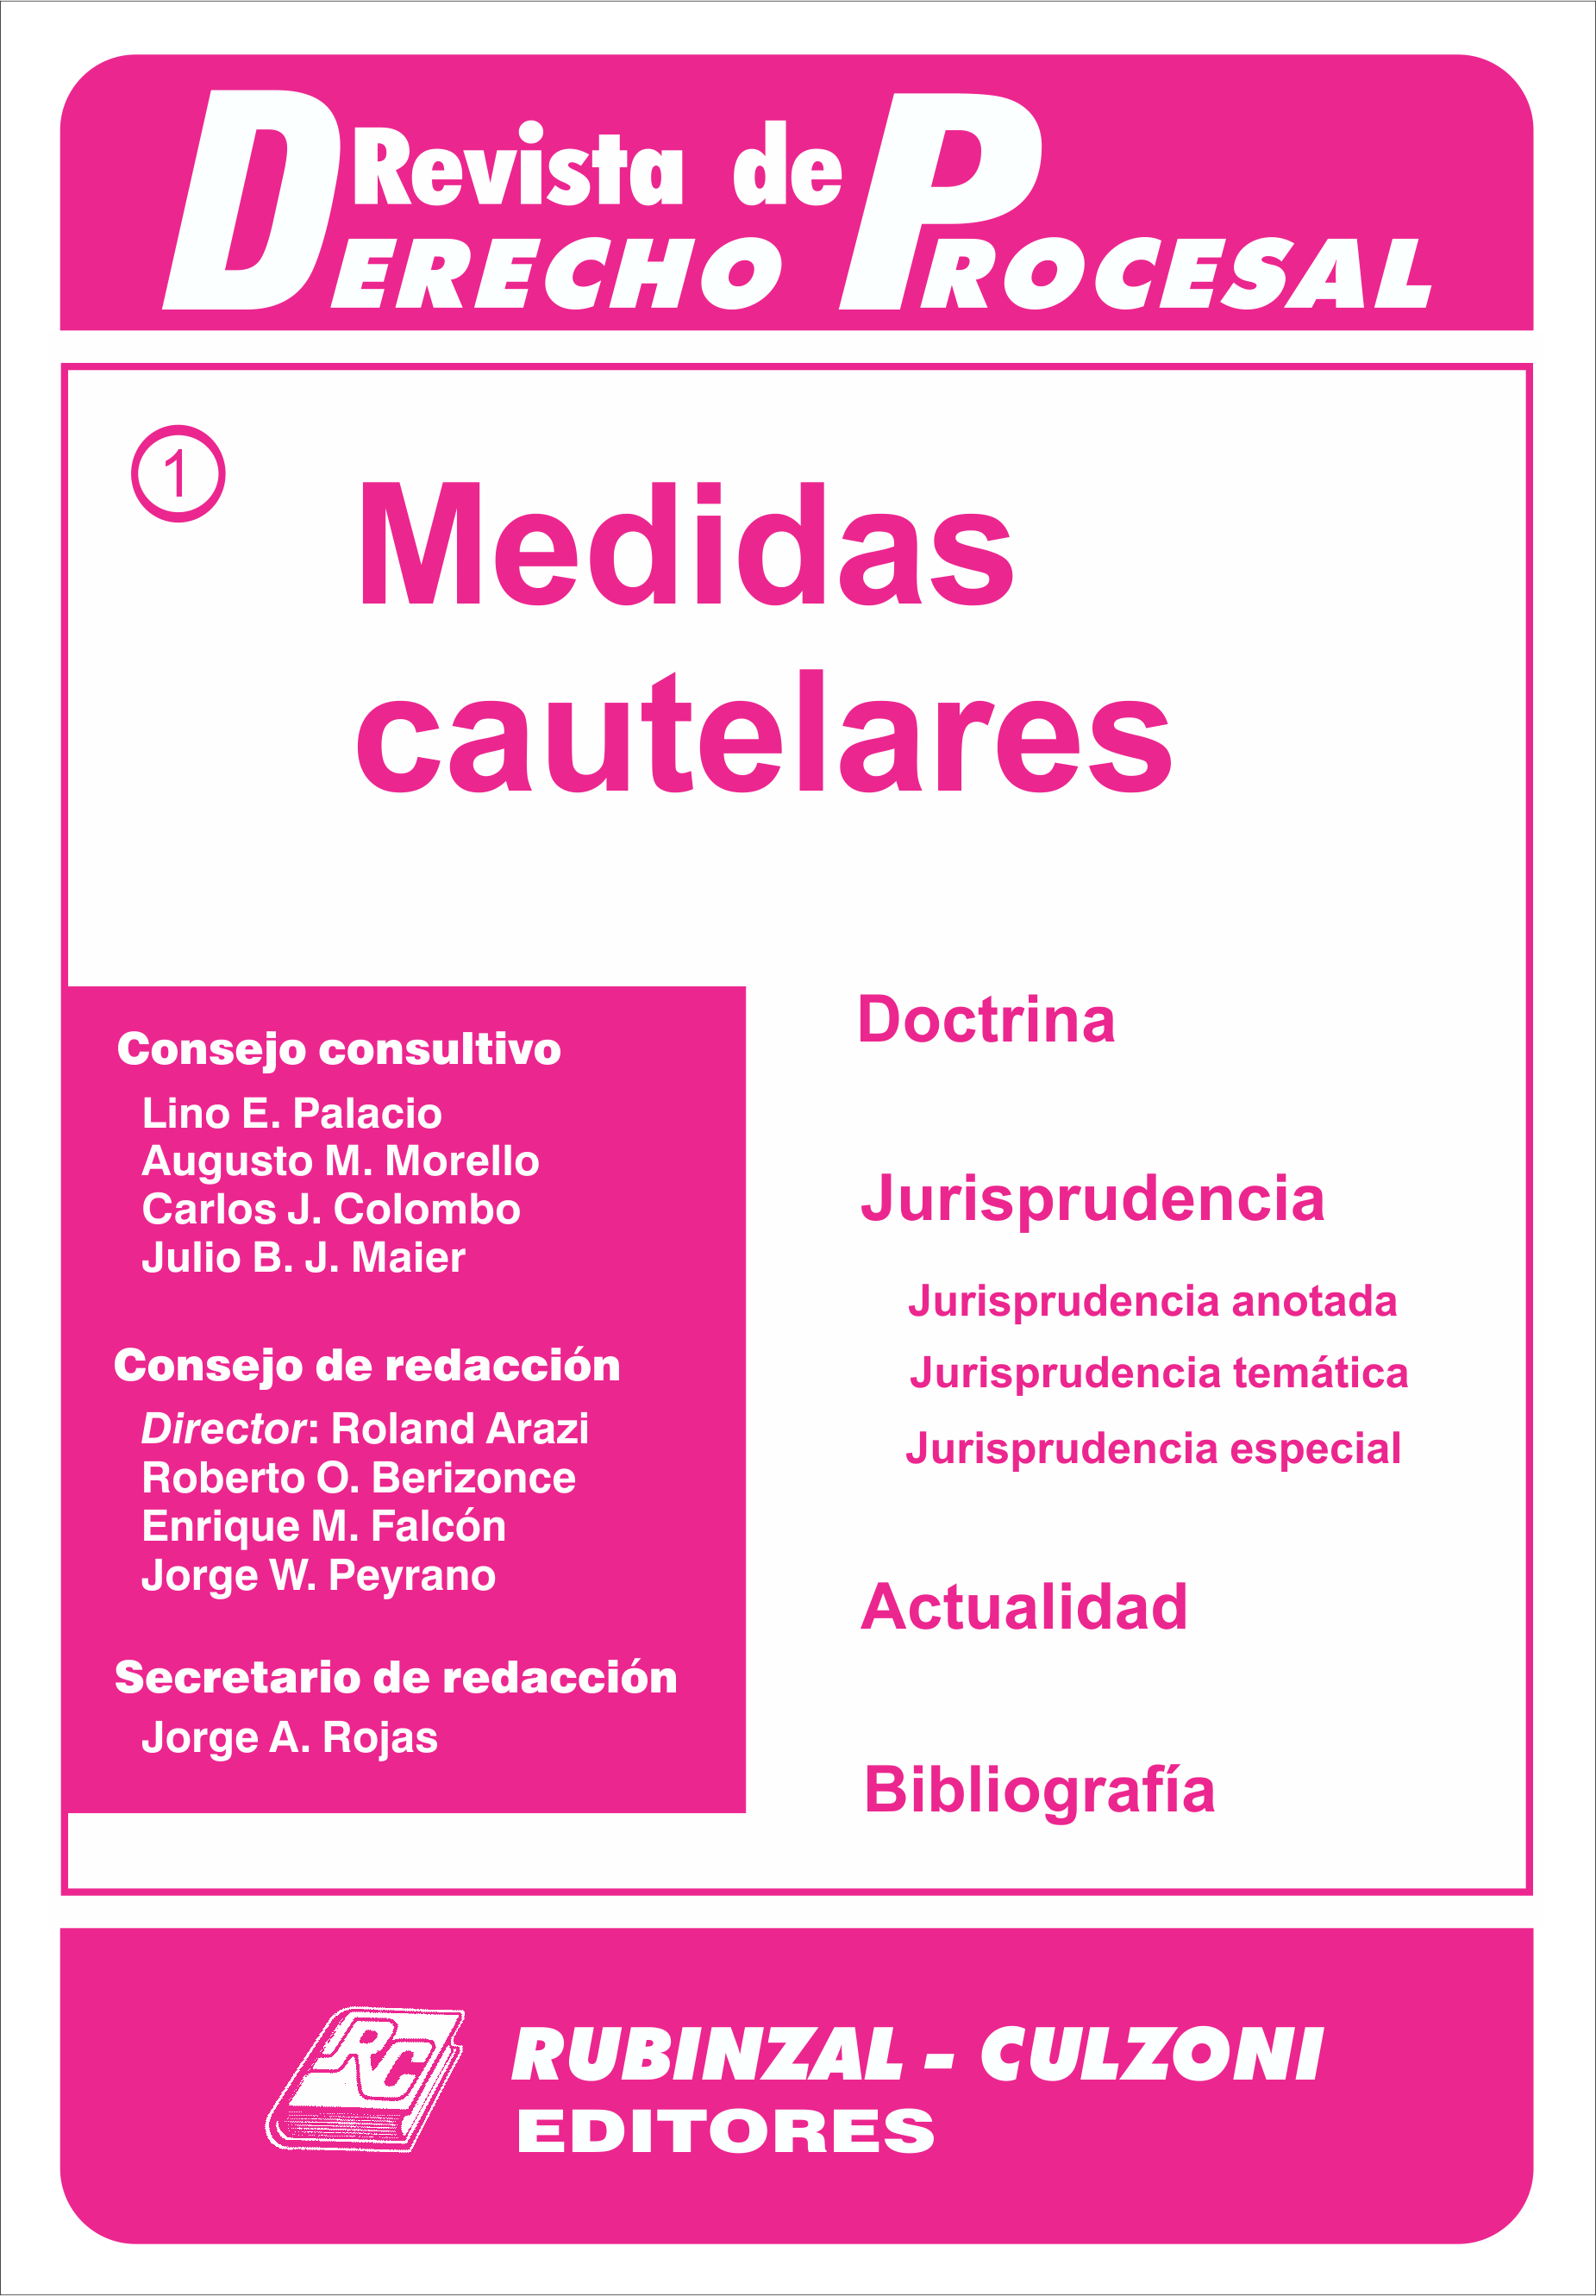 Revista de Derecho Procesal - Medidas Cautelares